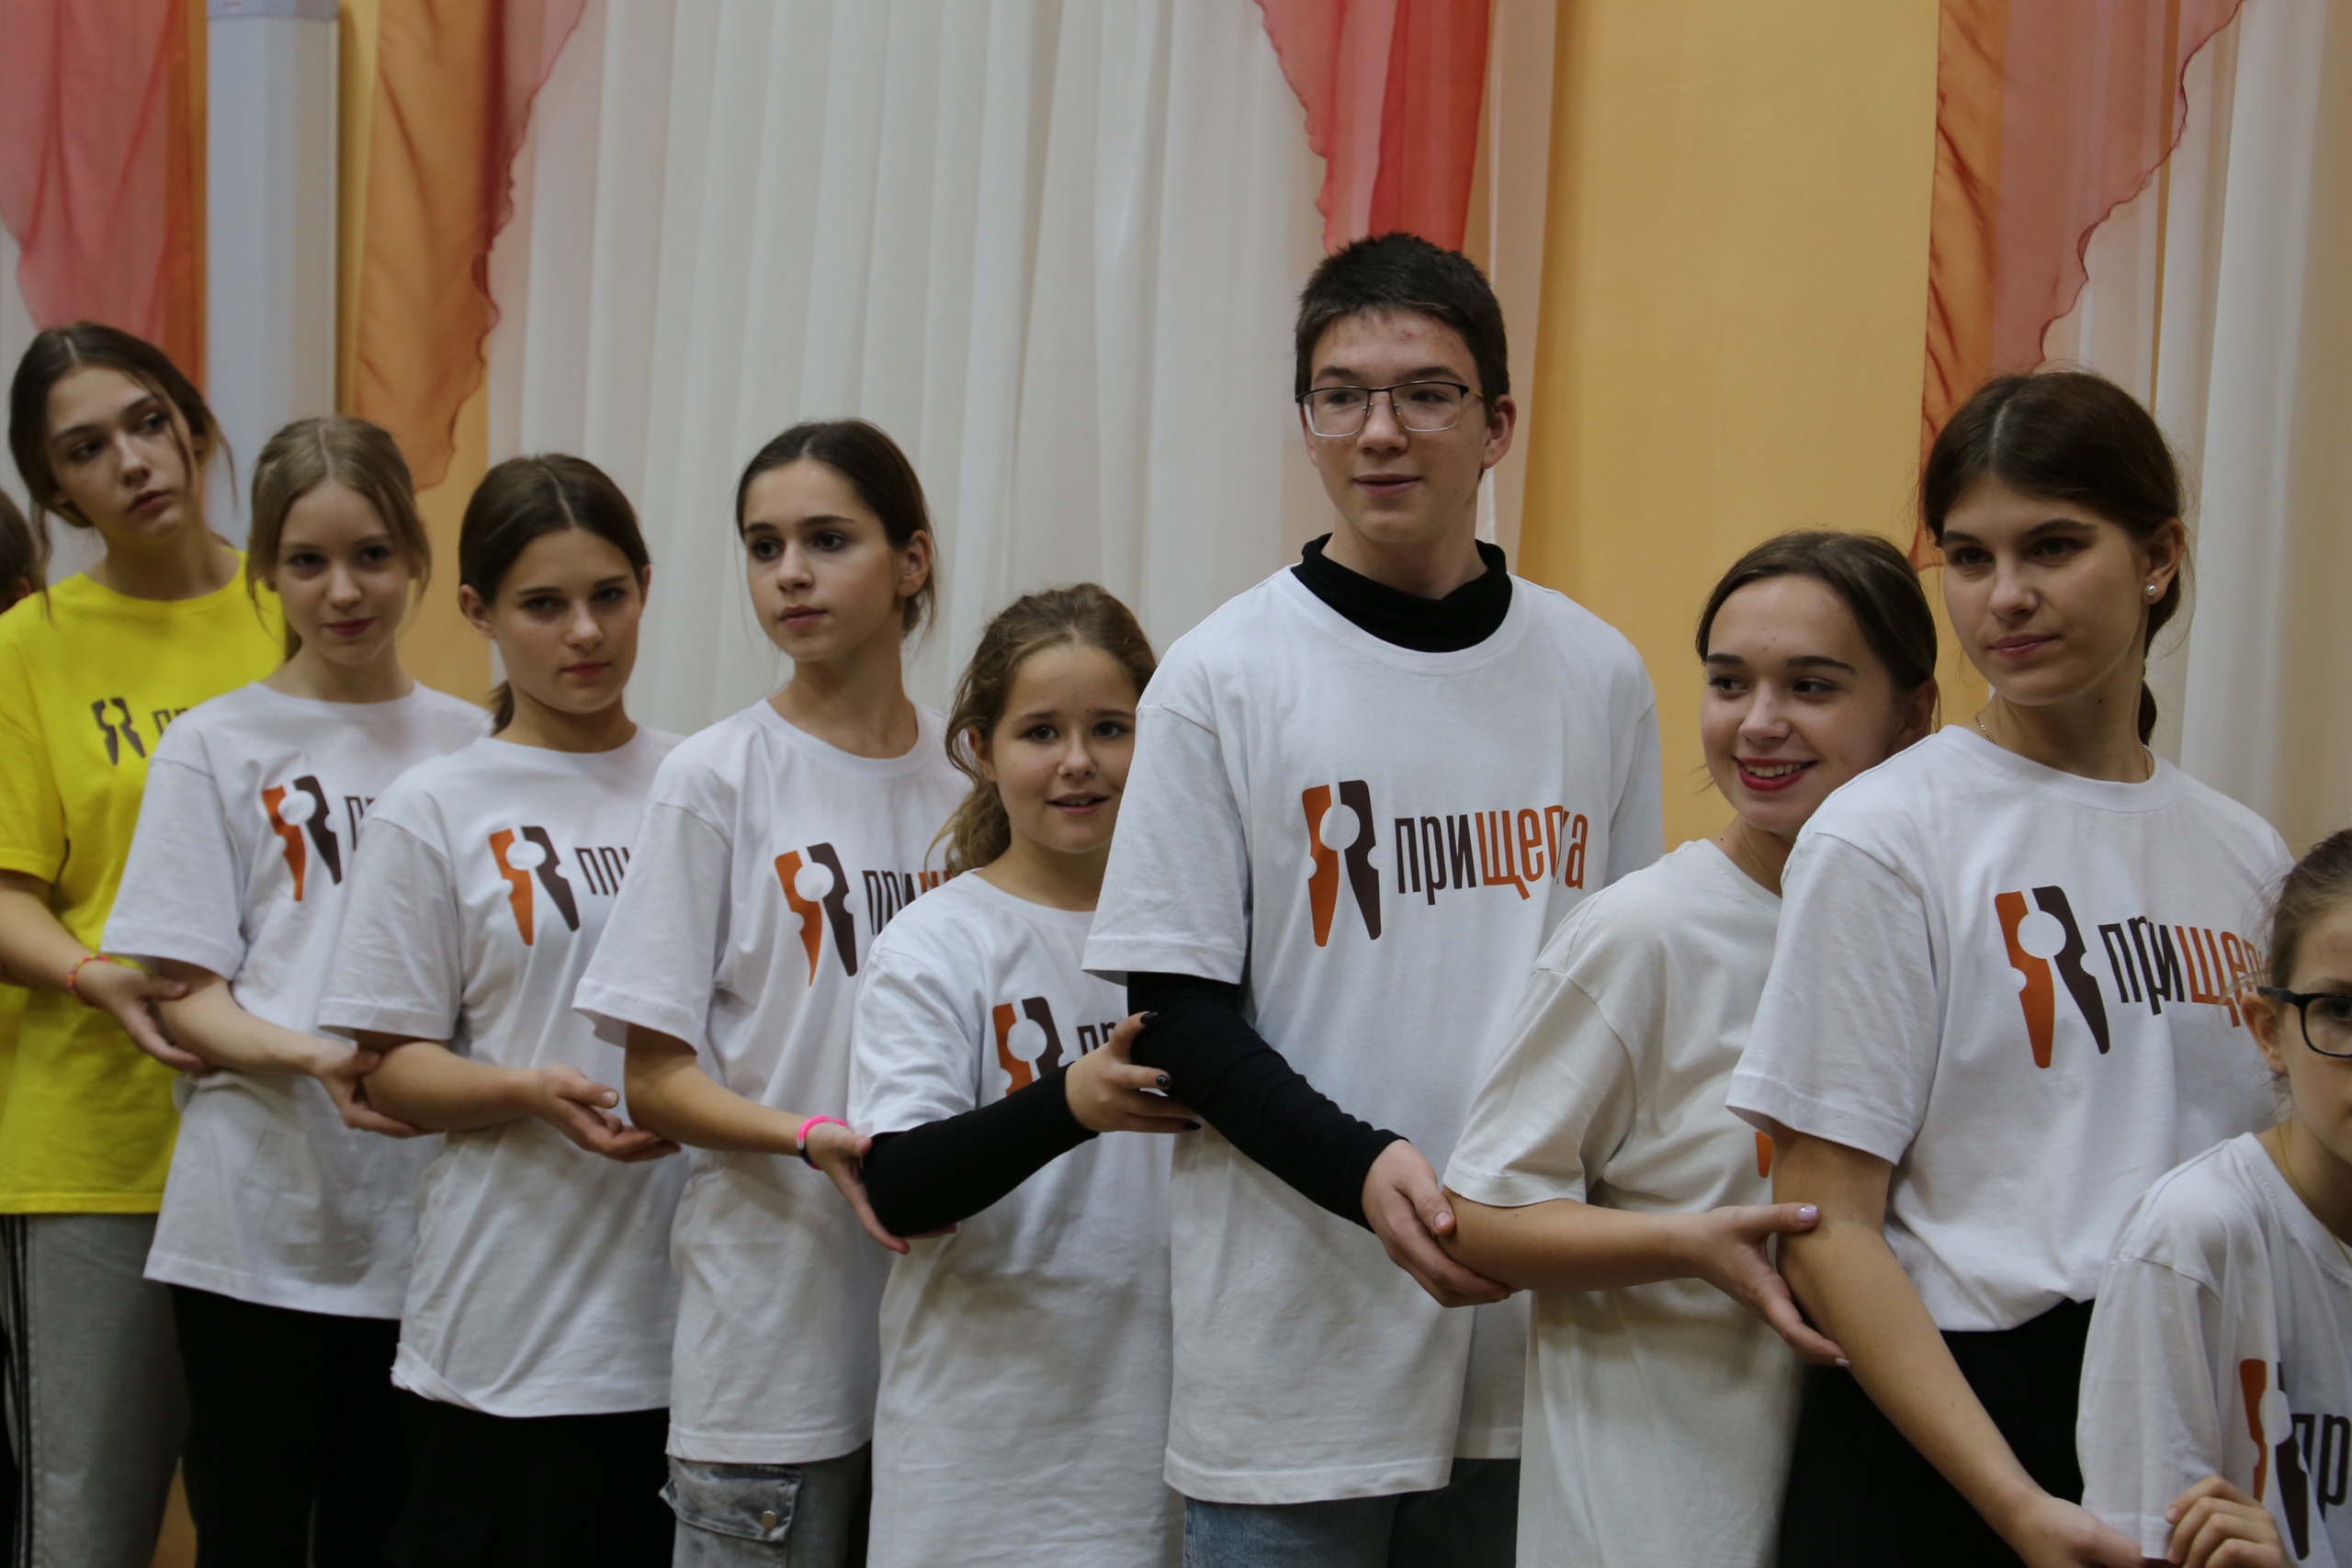 Завершился третий день открытого фестиваля-лаборатории сельских самодеятельных коллективов «ПриЩепка».